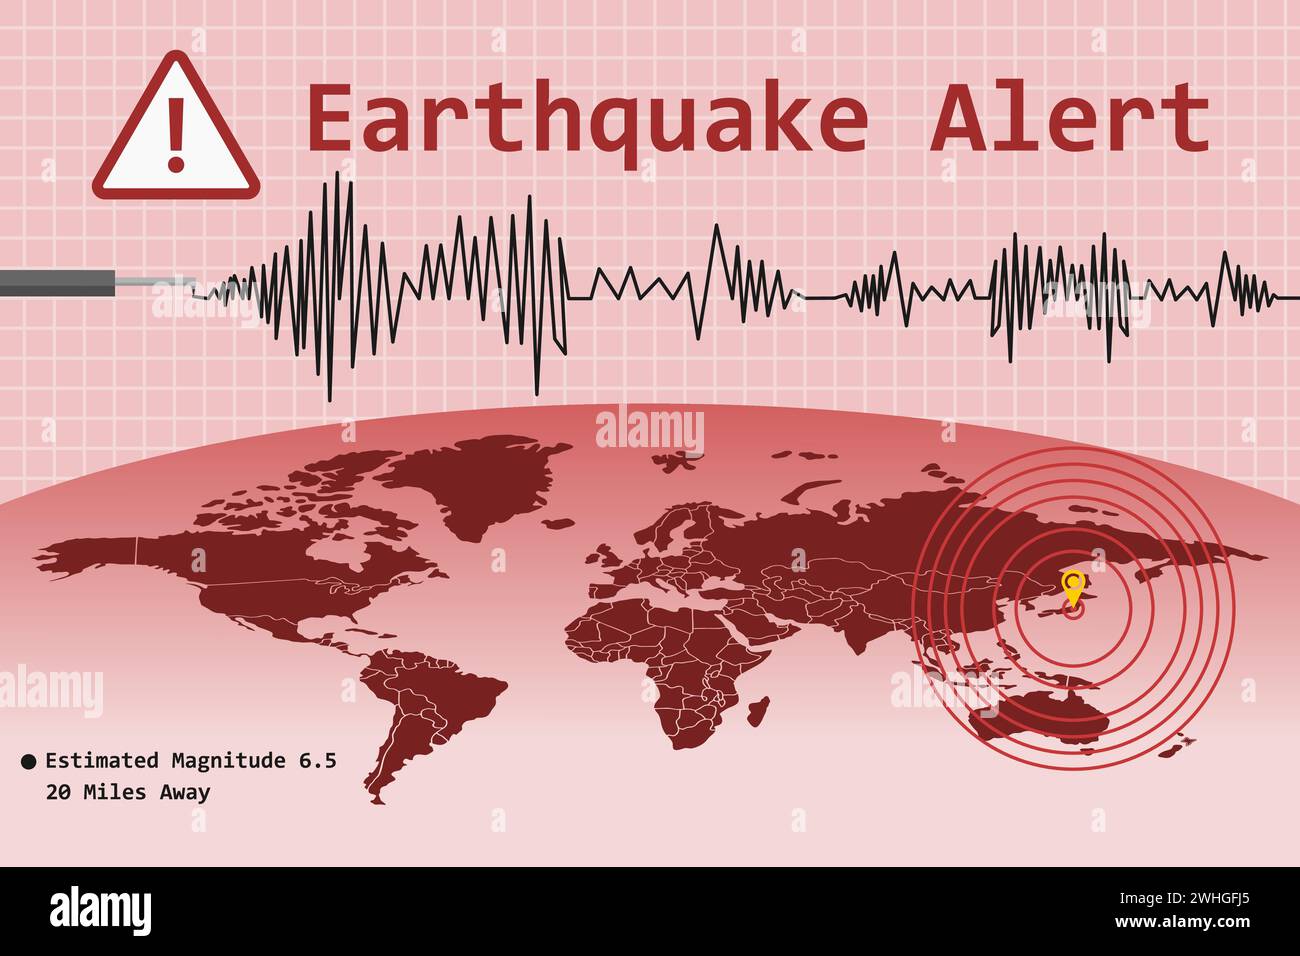 Erdbebenwarnkonzept mit Standortmarkierung des Pulsationsperizzentrums und Weltkarte. Vektorabbildung. Stock Vektor